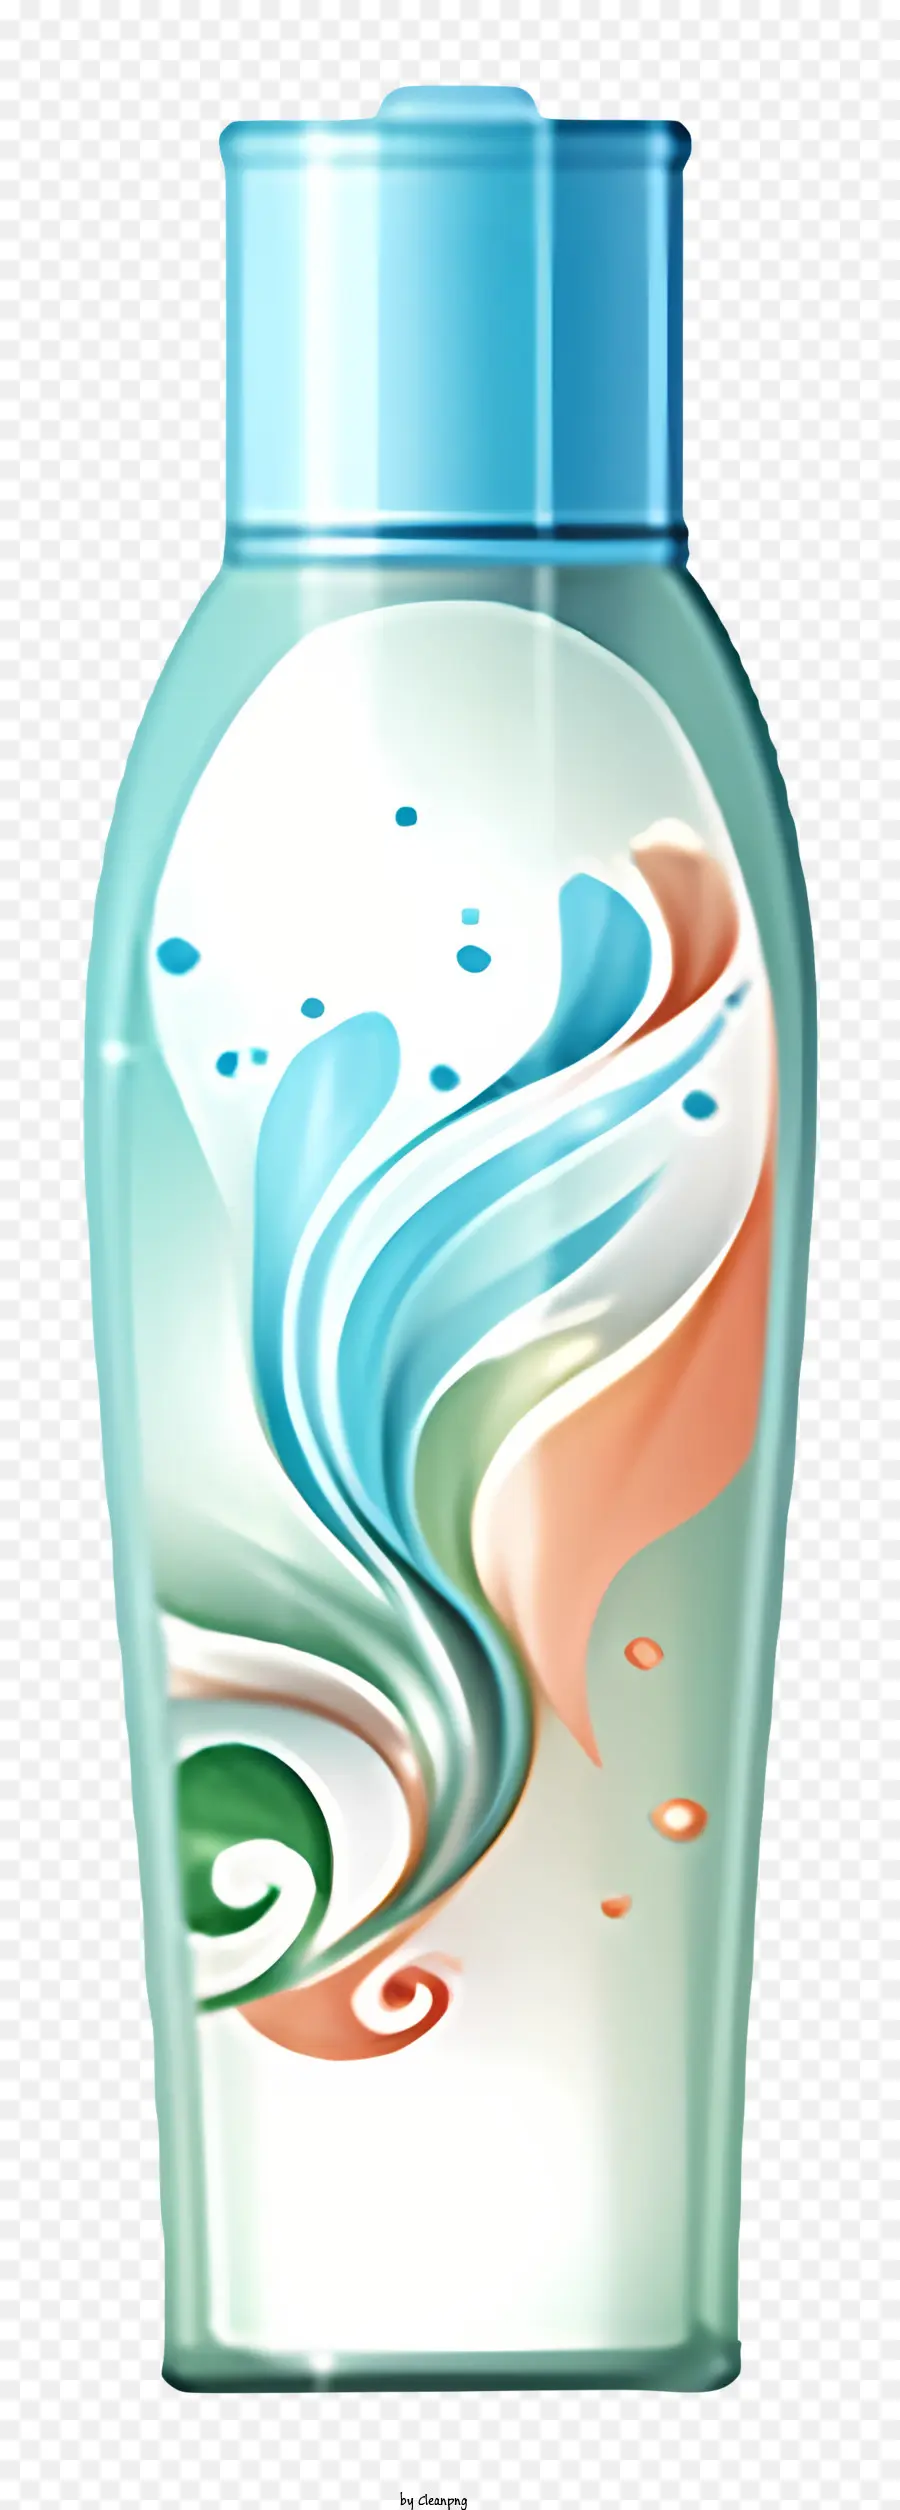 Blaues Glasflaschen Aquarell -Designtöne aus blauen Schatten der lila grünen Farbtöne - Blaue Glasflasche mit wirbelnden Aquarell -Design